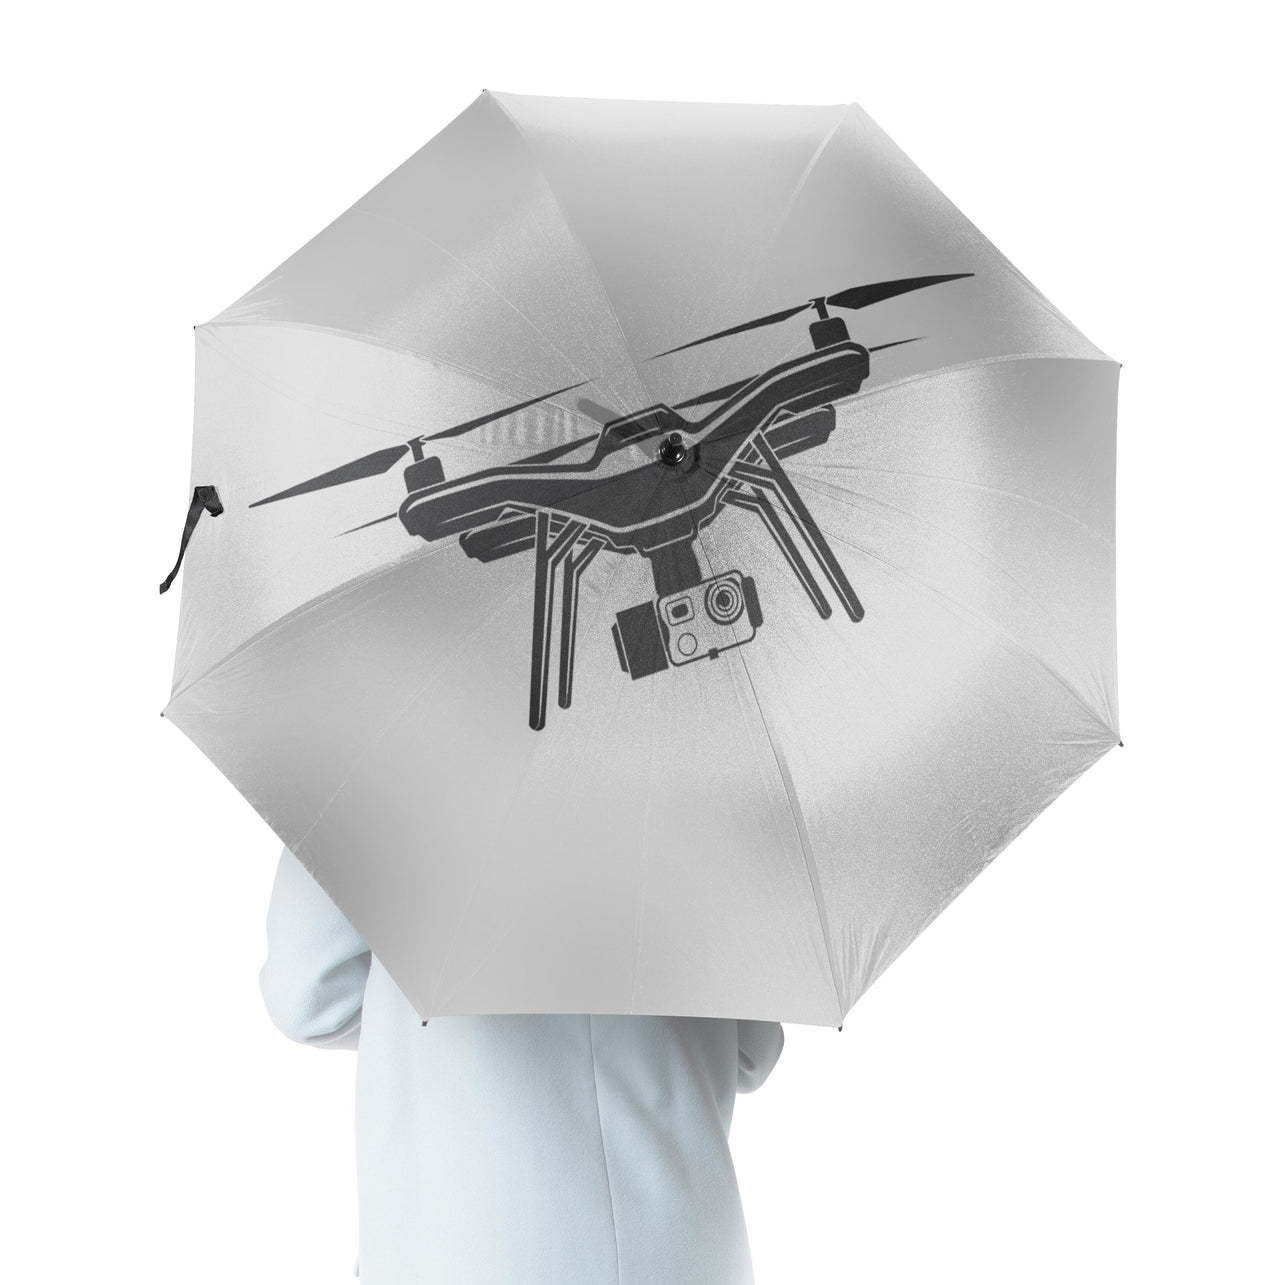 Drone Silhouette Designed Umbrella